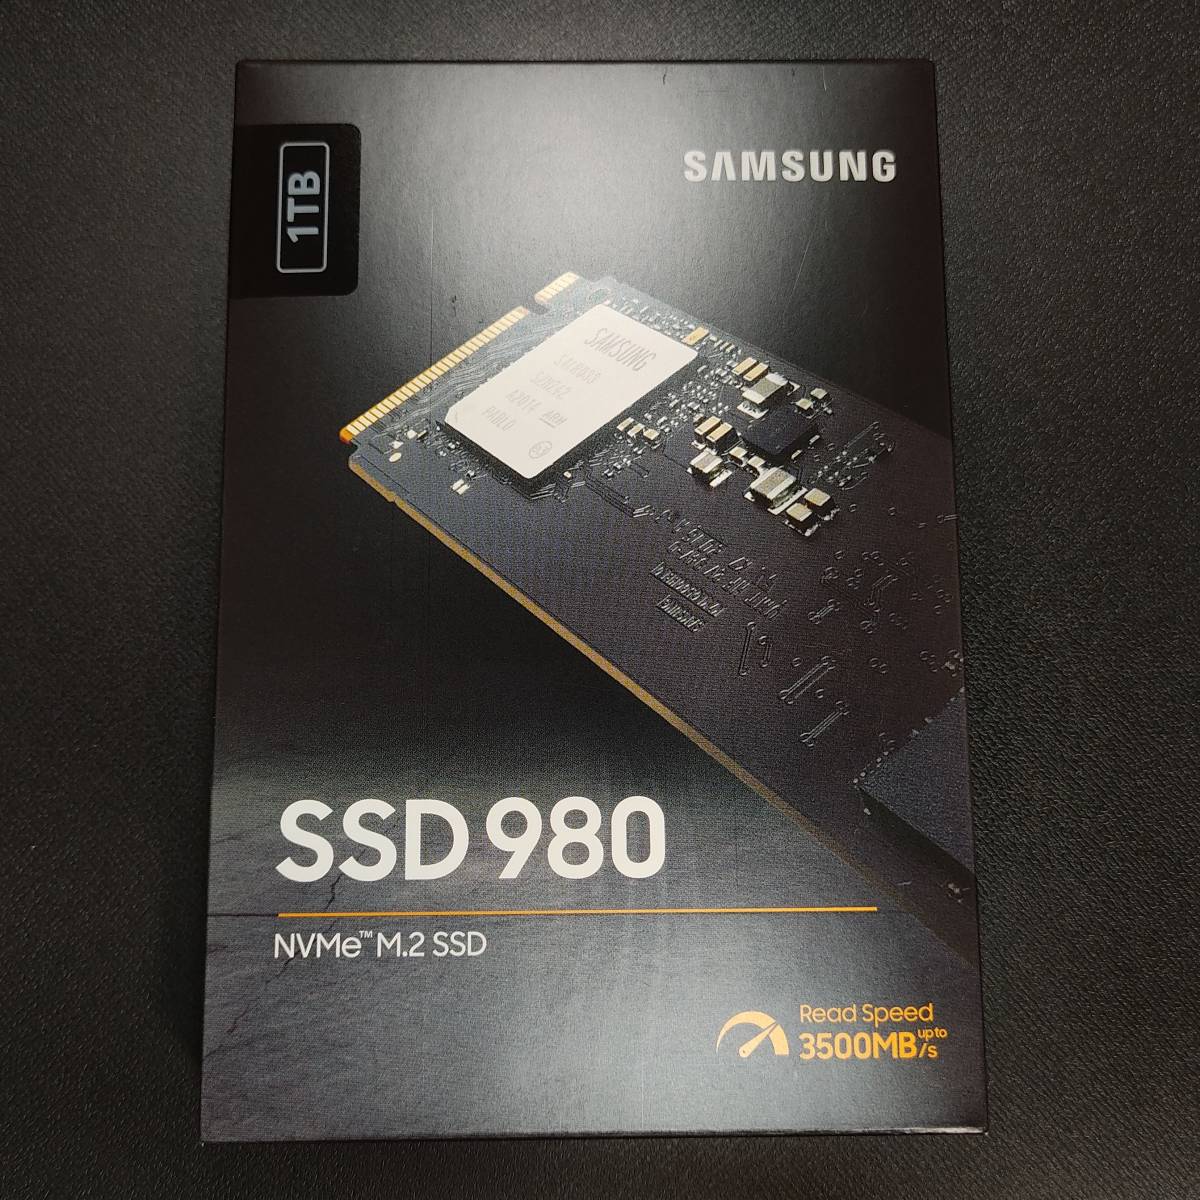 日本製】 Samsung 1TB SSD NVMe M.2 MZ-V8V1T0B/IT 980 256GB